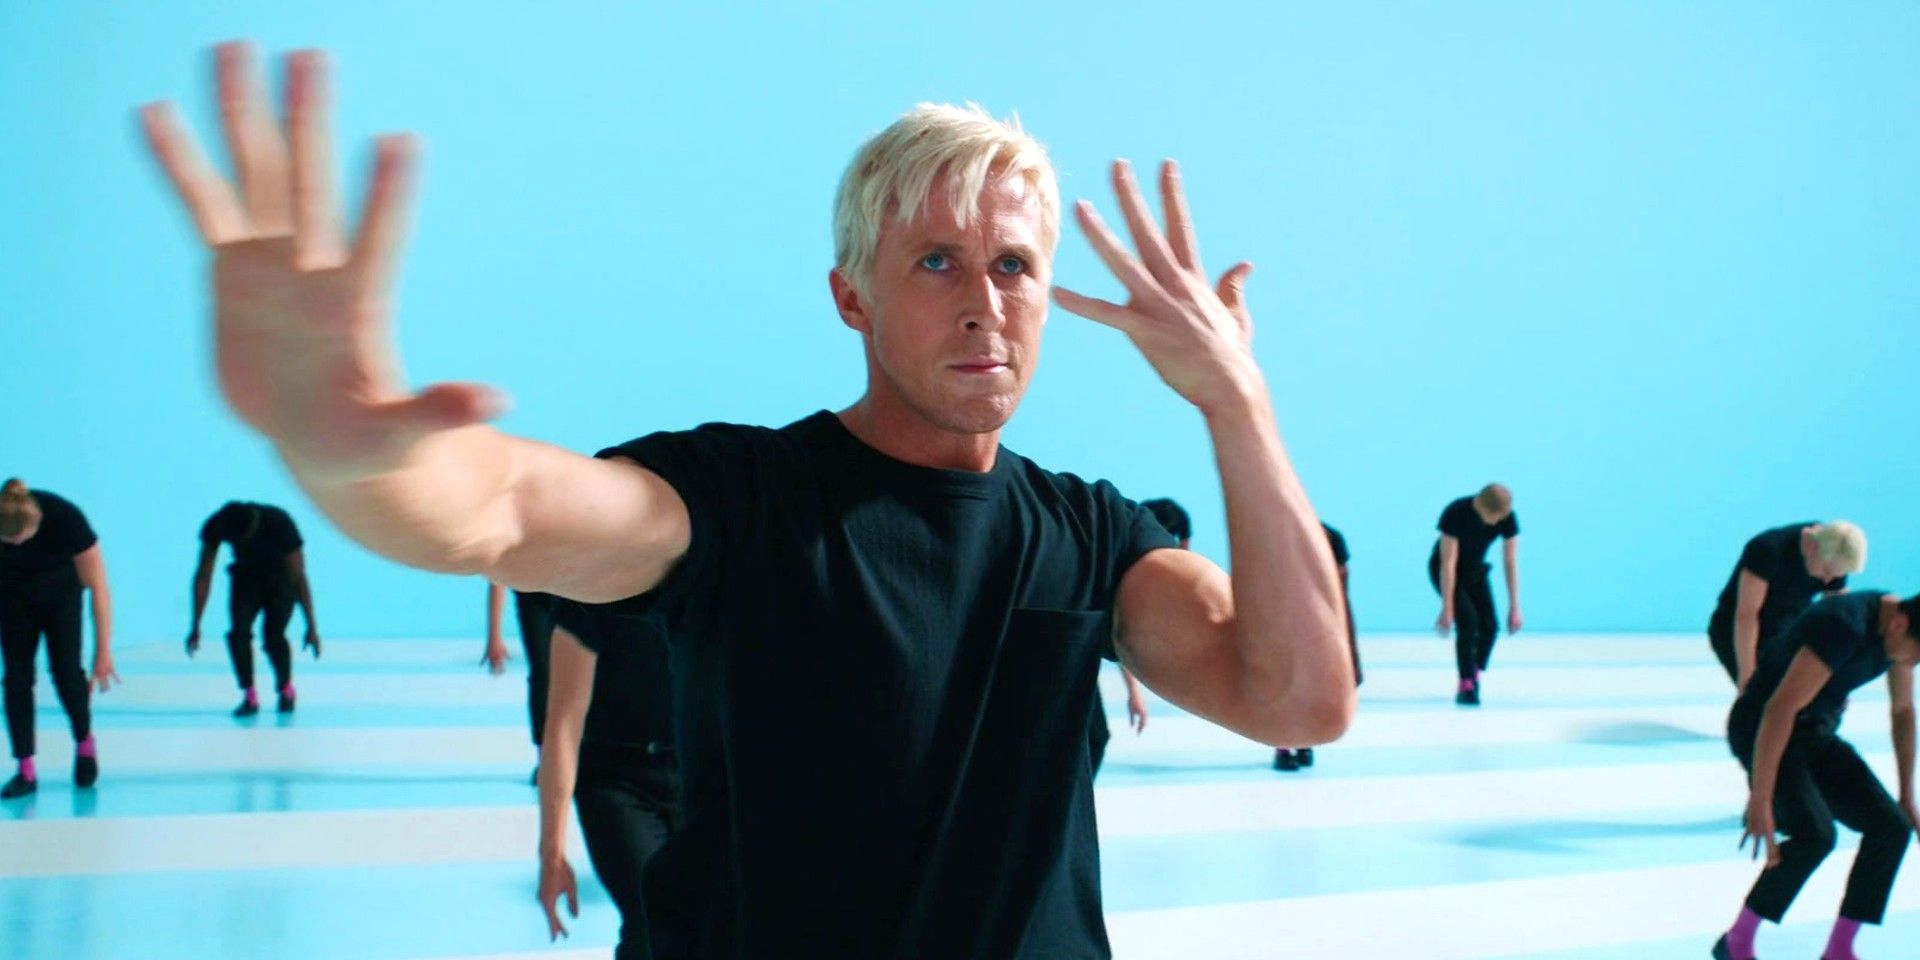 “I’m Just Ken” de Barbie obtiene un toque navideño con Ryan Gosling interpretando una canción viral en un nuevo video